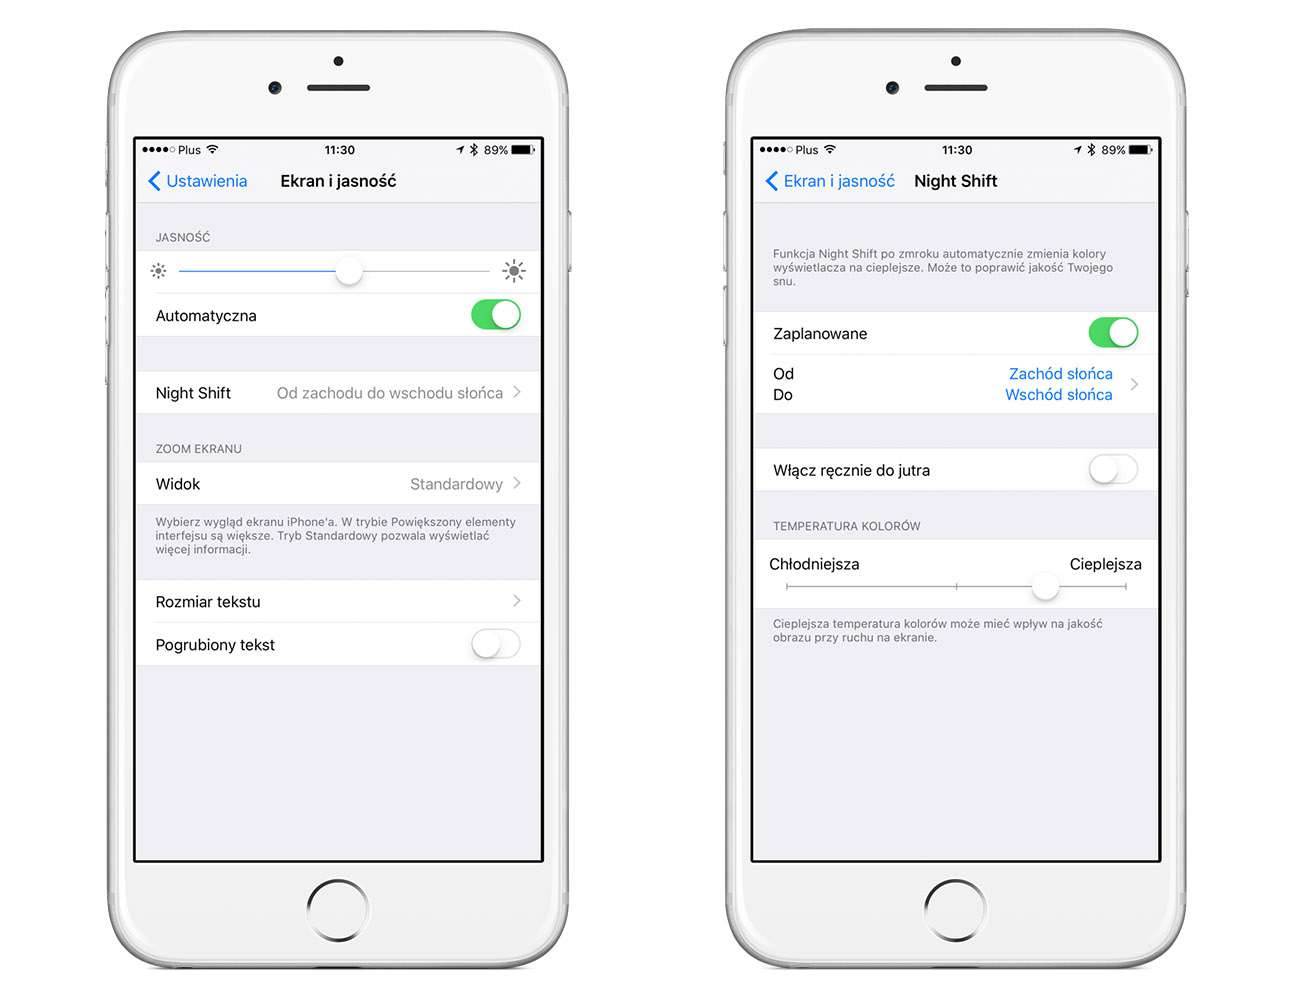 Jak działa nowa funkcja "Night Shift" i na których iUrządzeniach jest ona dostępna polecane, ciekawostki Youtube, Wideo, tryb nocny w iPhone, tryb nocny w iOS 9.3, tryb nocny, Night Shift, na jakich urządzeniach działa tryb nocny, na jakich iPhone night shift, jak włączyć tryb nocny, jak działa tryb nocny w iOS, iOS 9.3  Wczoraj wieczorem Apple udostępniło oficjalną wersję iOS 9.3. Jedną z nowości jest dodanie funkcji ?Night Shift?, czyli trybu nocnego. Co to takiego i na których iUrządzeniach działa? NightShift